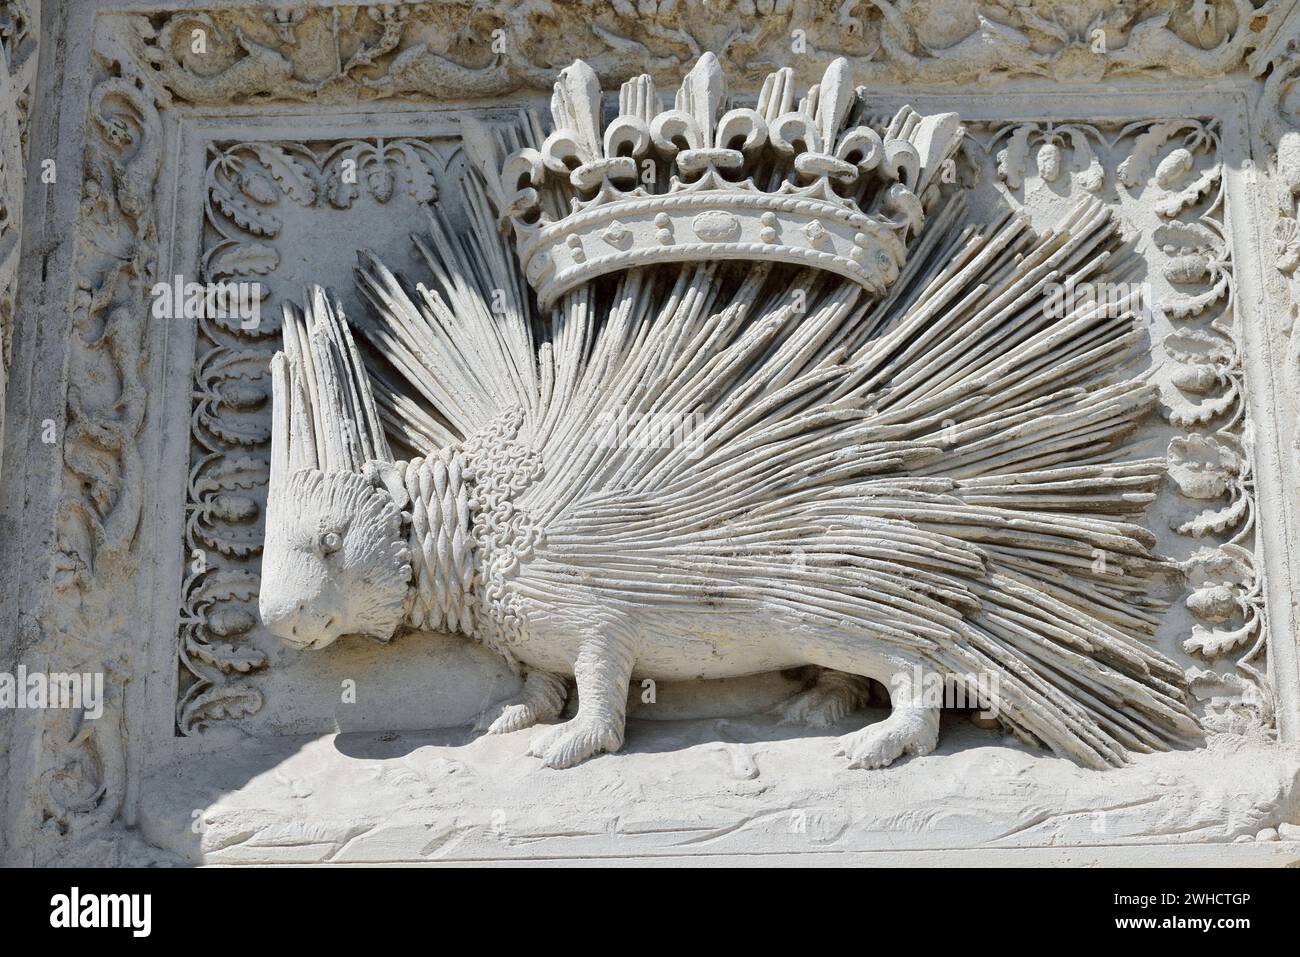 Porcospino coronato, animale araldico di Luigi XII, castello di Blois, dipartimento di Blois, Loir-et-Cher, regione Centre-Val de Loire, Francia Foto Stock